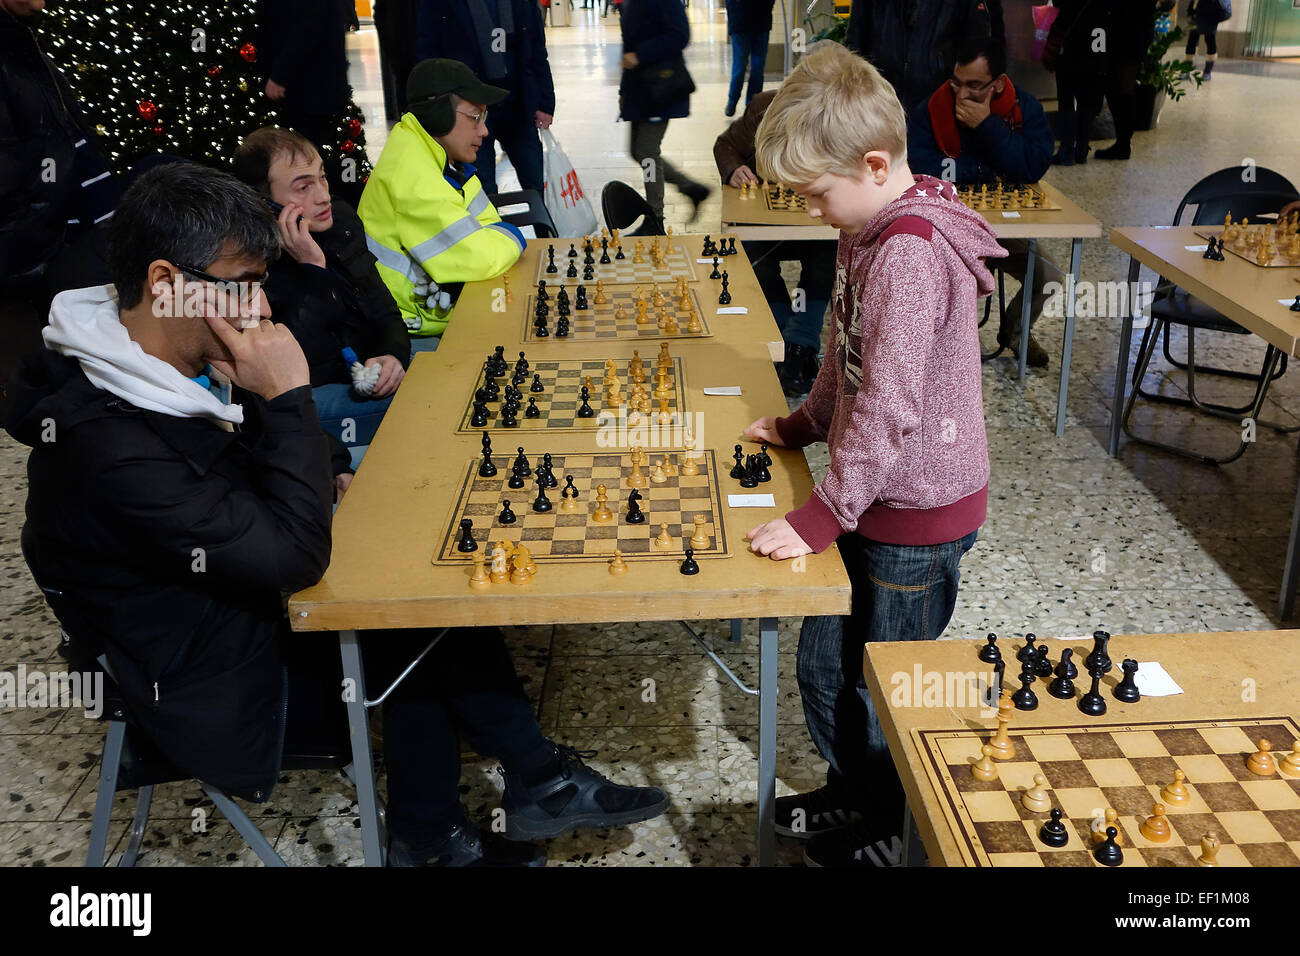 10 ans garçon joue aux échecs simultanée avec 10 participants adultes . Nordstan, Göteborg, Göteborg, Suède Banque D'Images